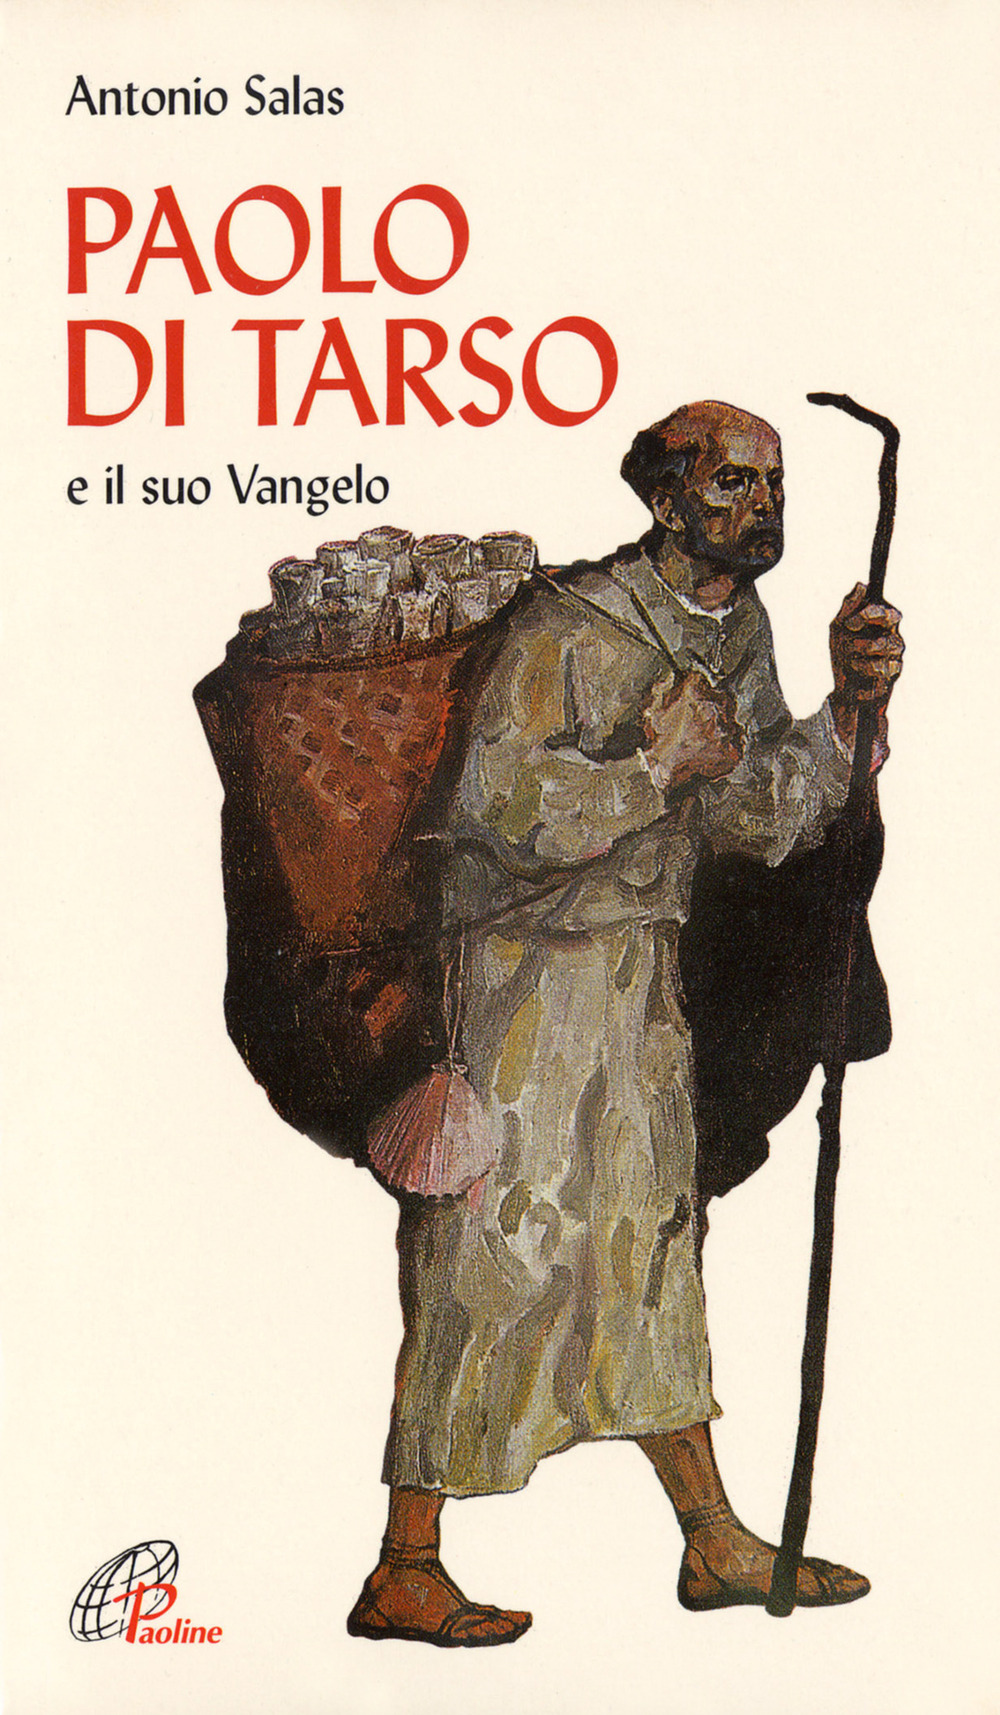 Image of Paolo di Tarso e il «Suo vangelo»